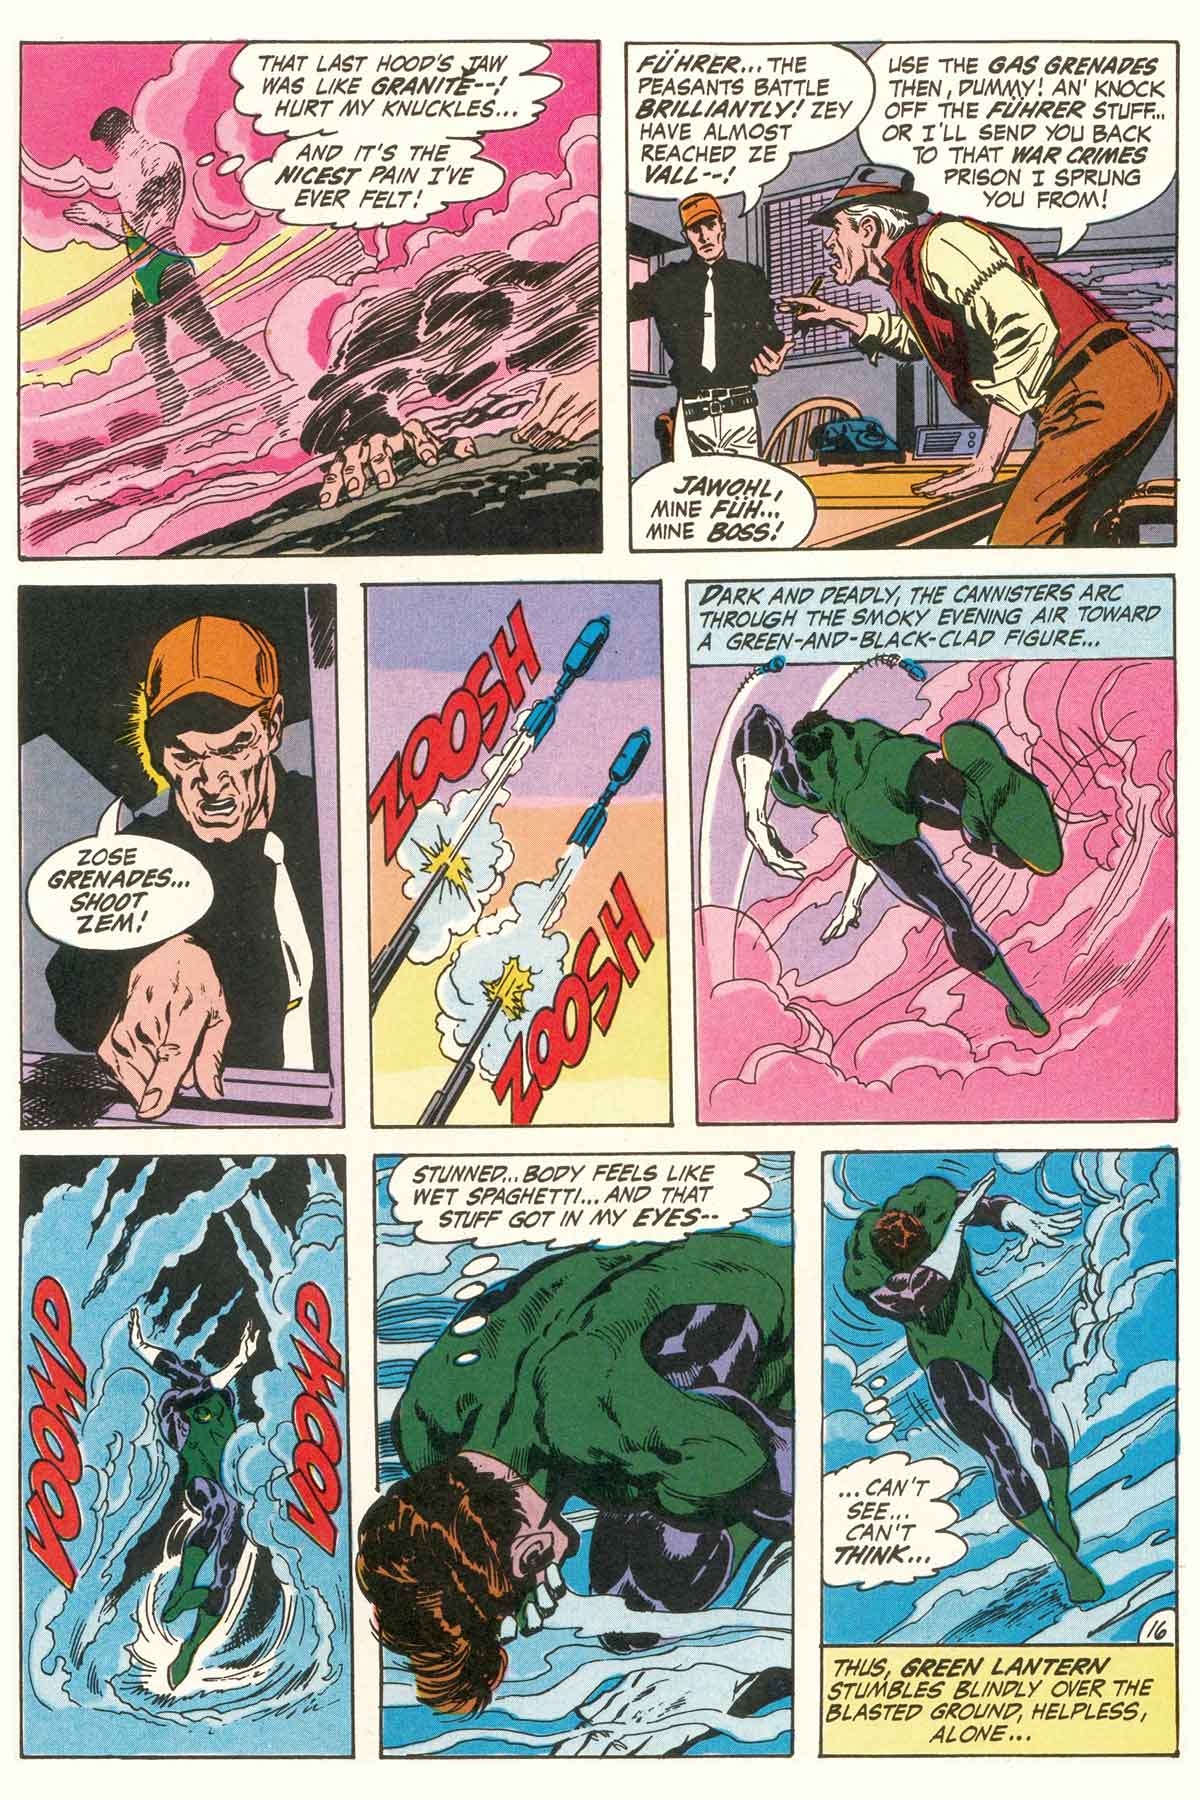 Read online Green Lantern/Green Arrow comic -  Issue #1 - 42